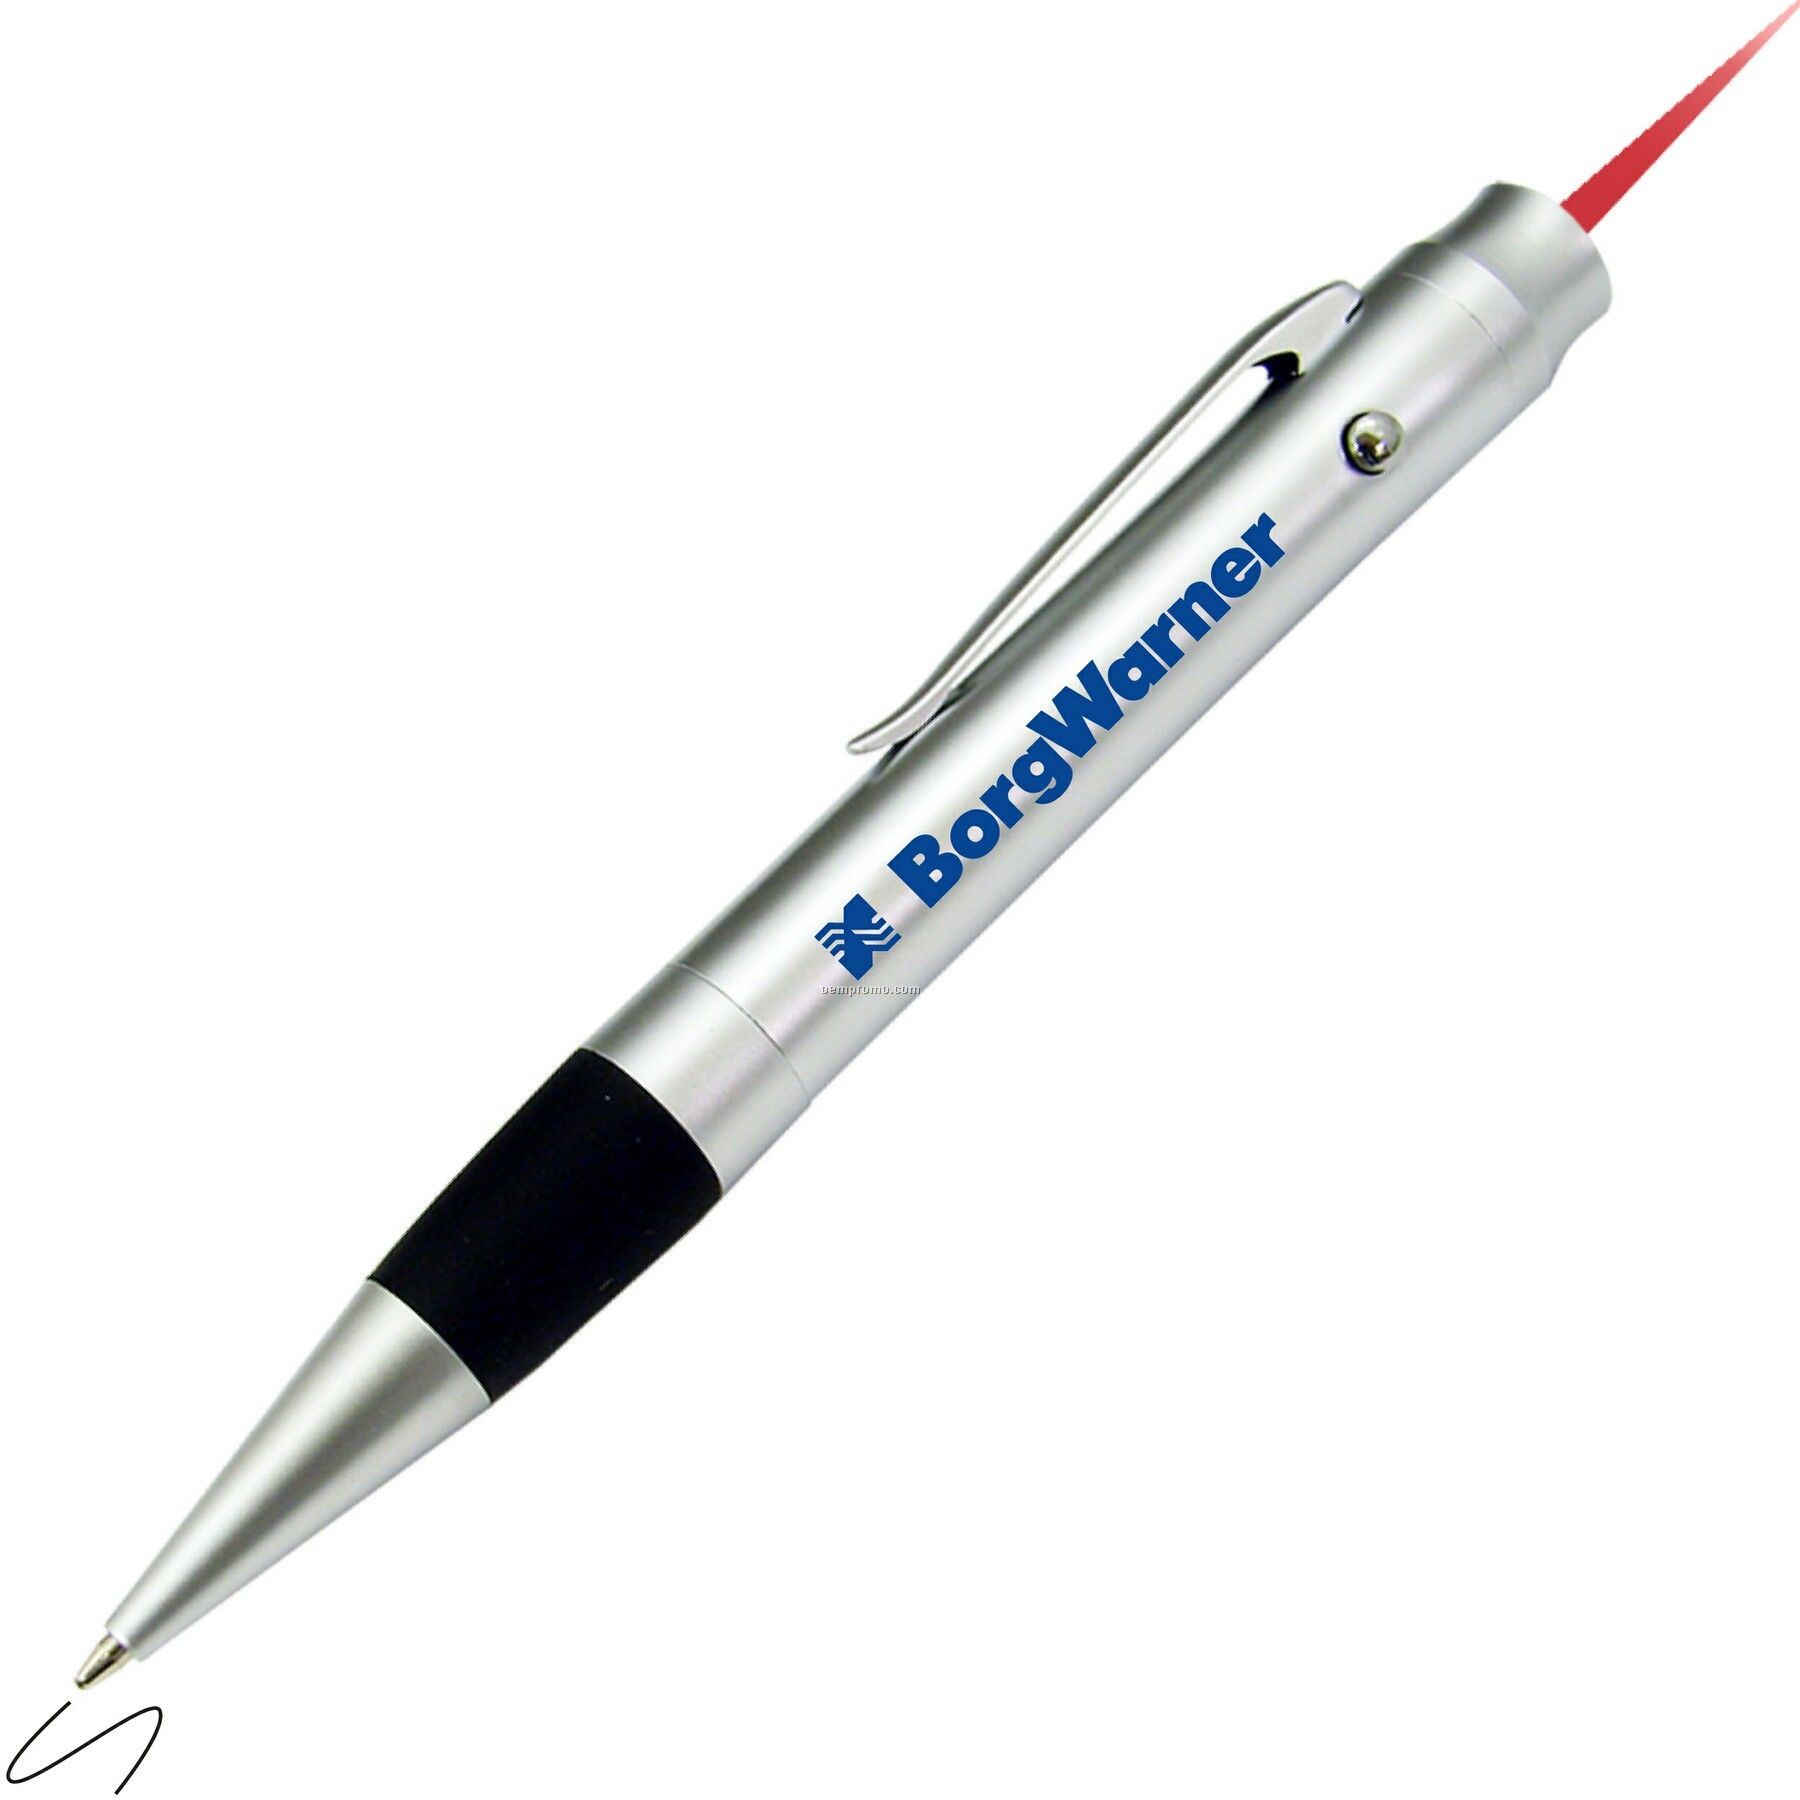 Alpec Starlite Laser Pointer Pen